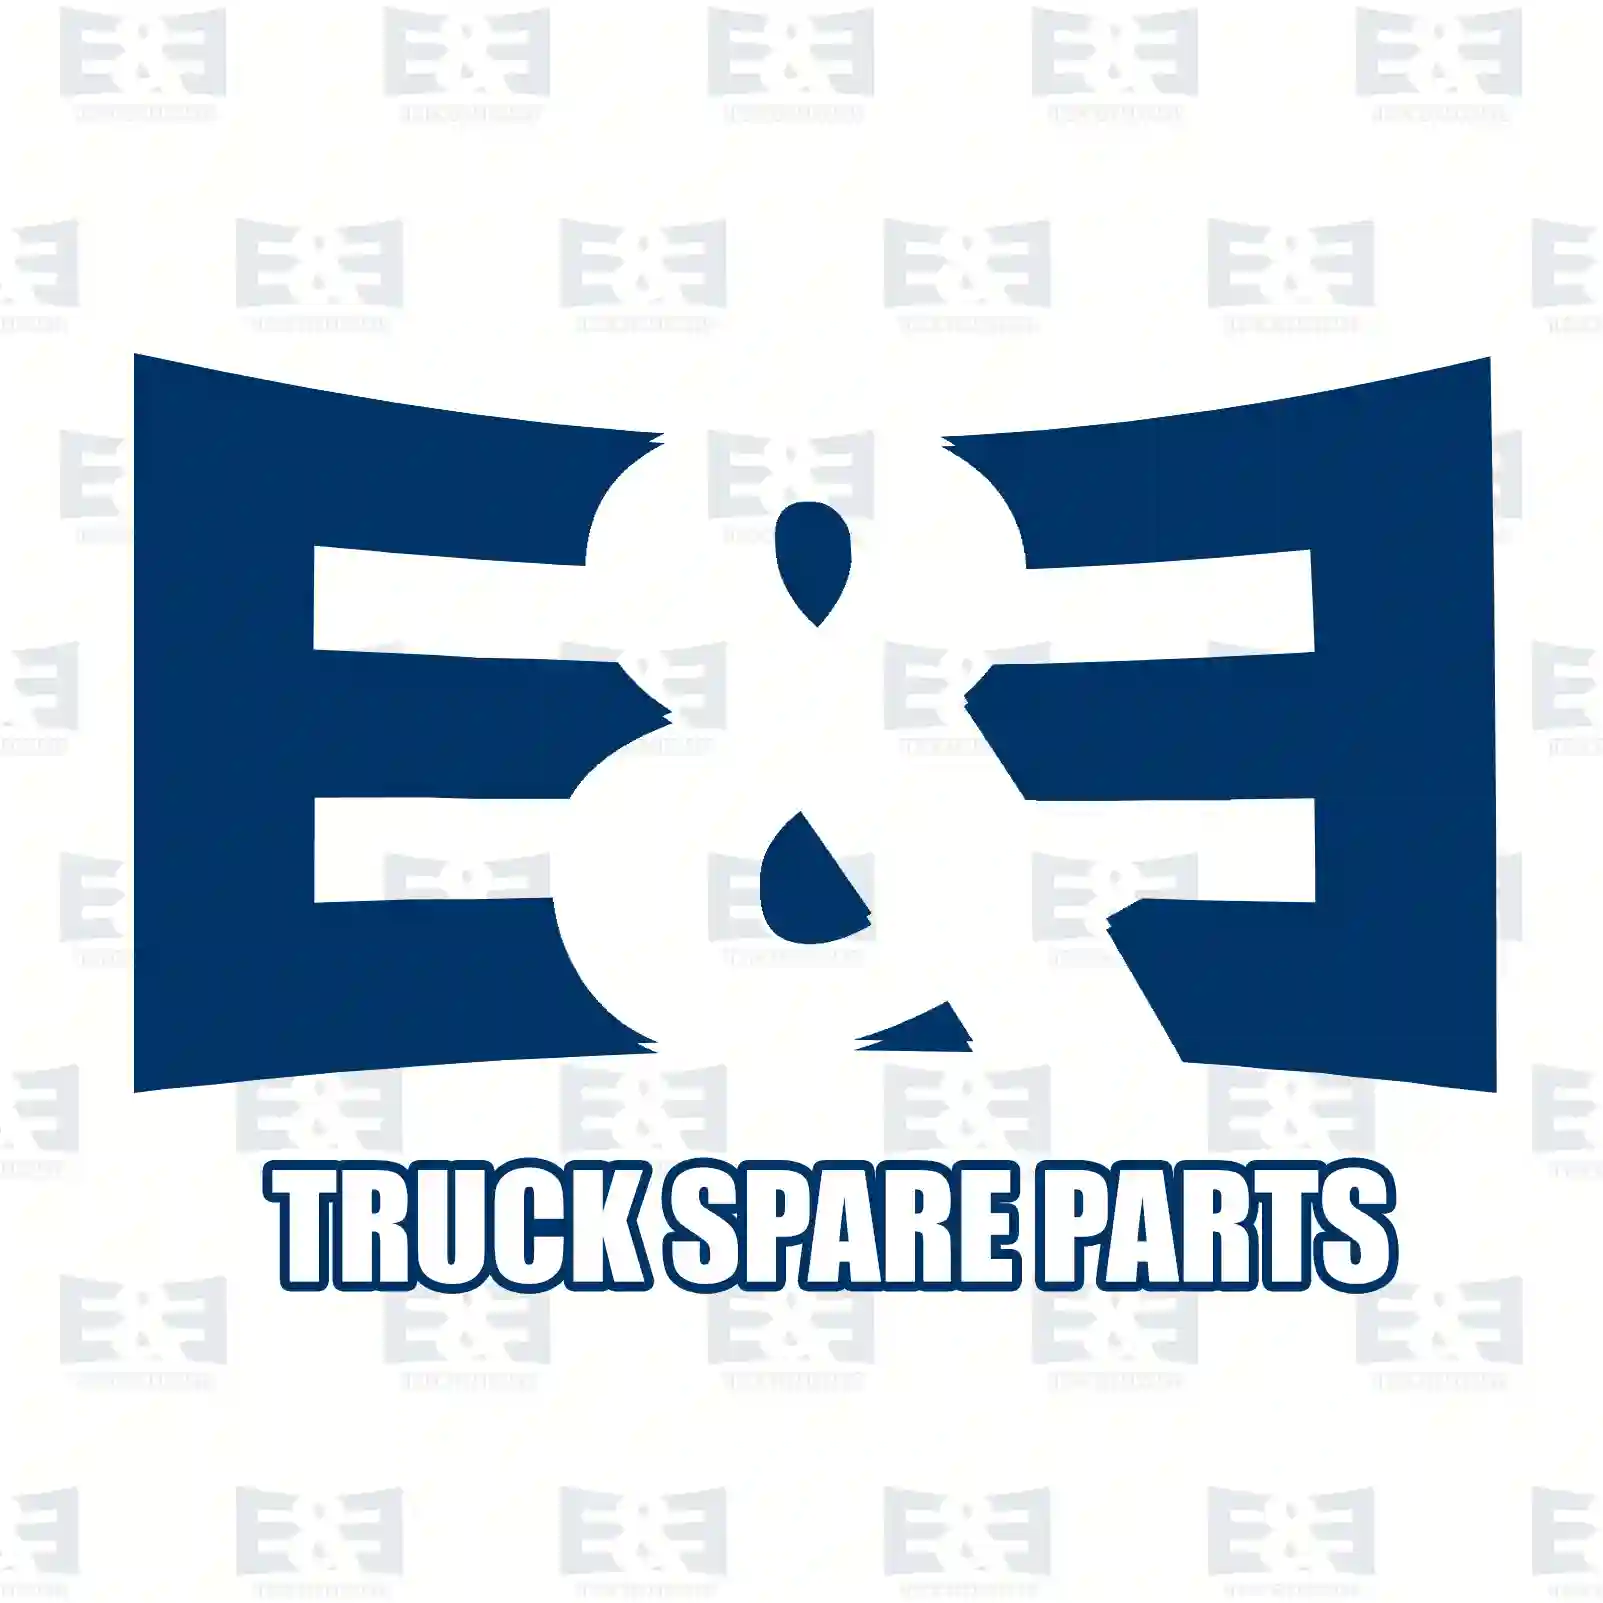 O-ring, 2E2285081, 0279972248, 06563414254, 06563414263, 0019976848, 0029974248, 0089977545, 0169974048, 0169979548, 0279972248, 5000281043, 2V5501317, ZG02910-0008 ||  2E2285081 E&E Truck Spare Parts | Truck Spare Parts, Auotomotive Spare Parts O-ring, 2E2285081, 0279972248, 06563414254, 06563414263, 0019976848, 0029974248, 0089977545, 0169974048, 0169979548, 0279972248, 5000281043, 2V5501317, ZG02910-0008 ||  2E2285081 E&E Truck Spare Parts | Truck Spare Parts, Auotomotive Spare Parts